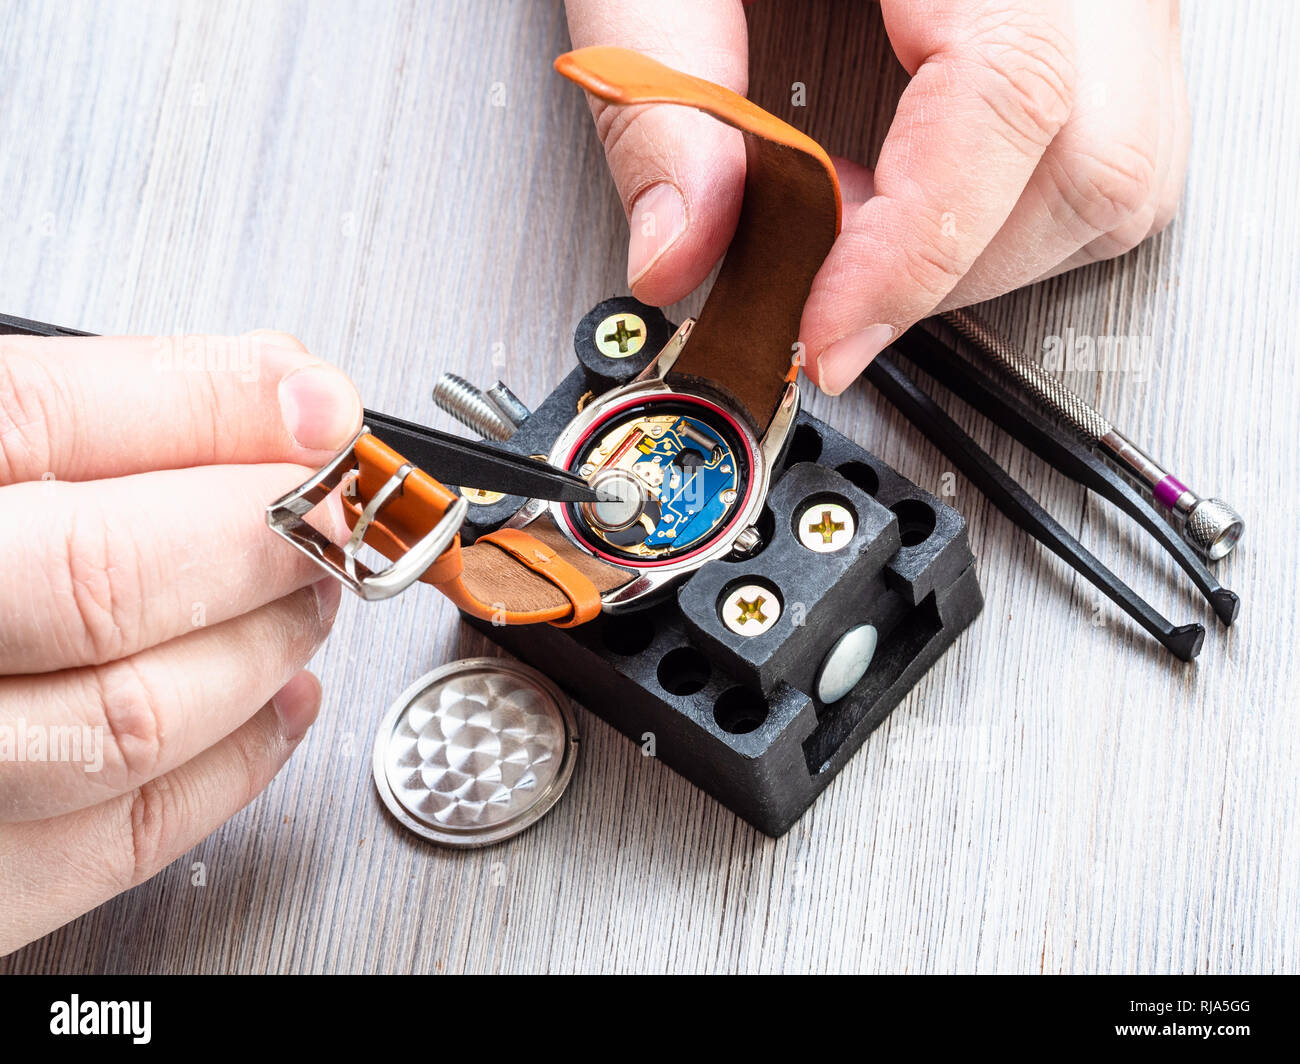 Atelier horloger réparateur montre - montre-bracelet quartz en batterie s'installe avec des pinces en plastique sur la table en bois Banque D'Images